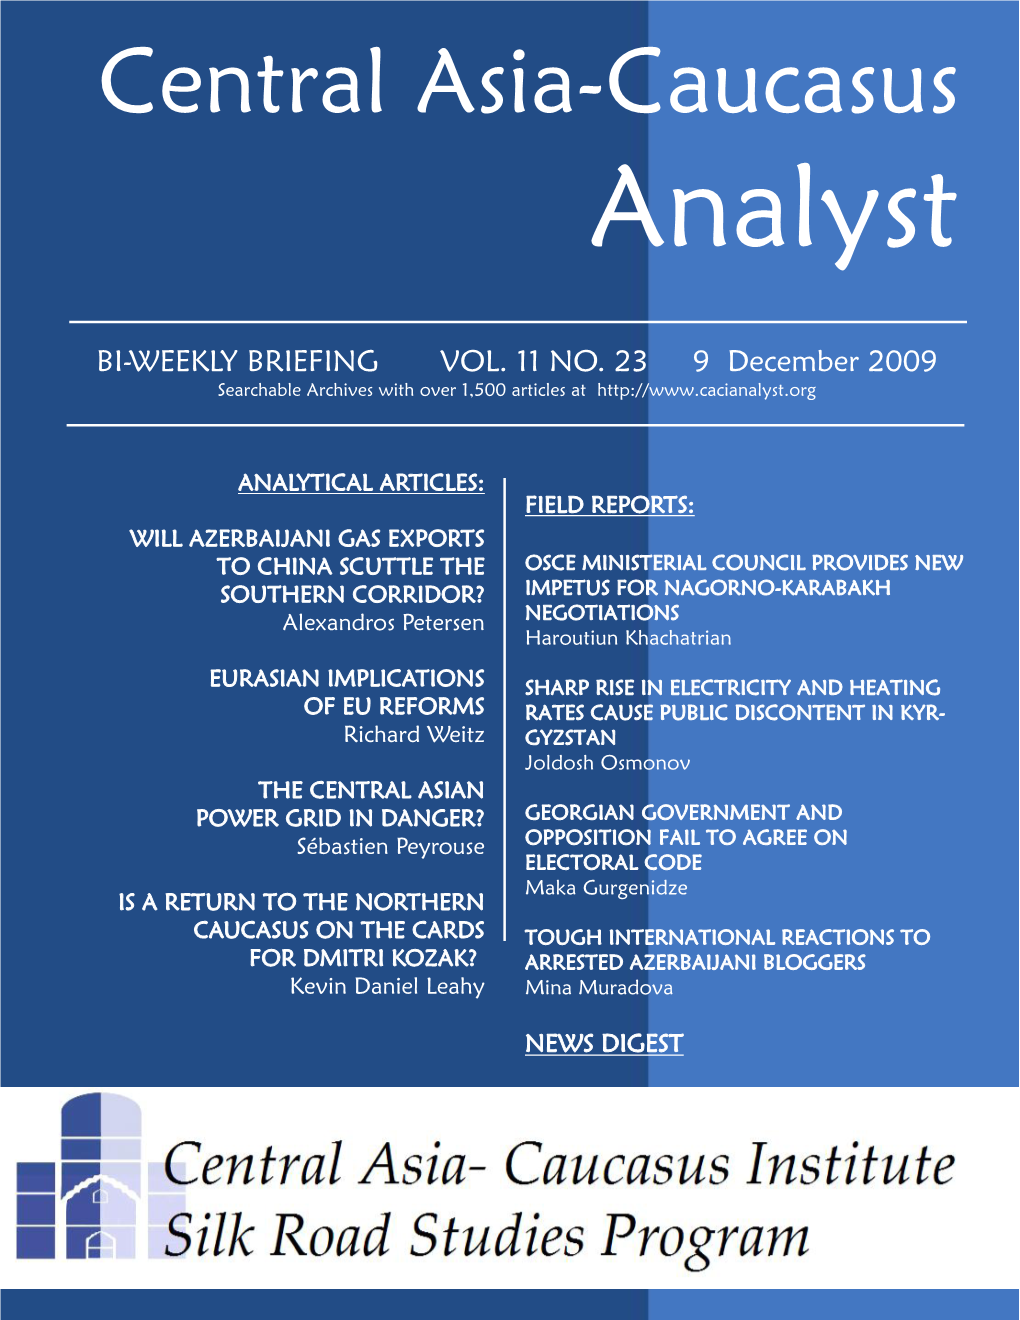 Central Asia-Caucasus Analyst Vol 11, No 23